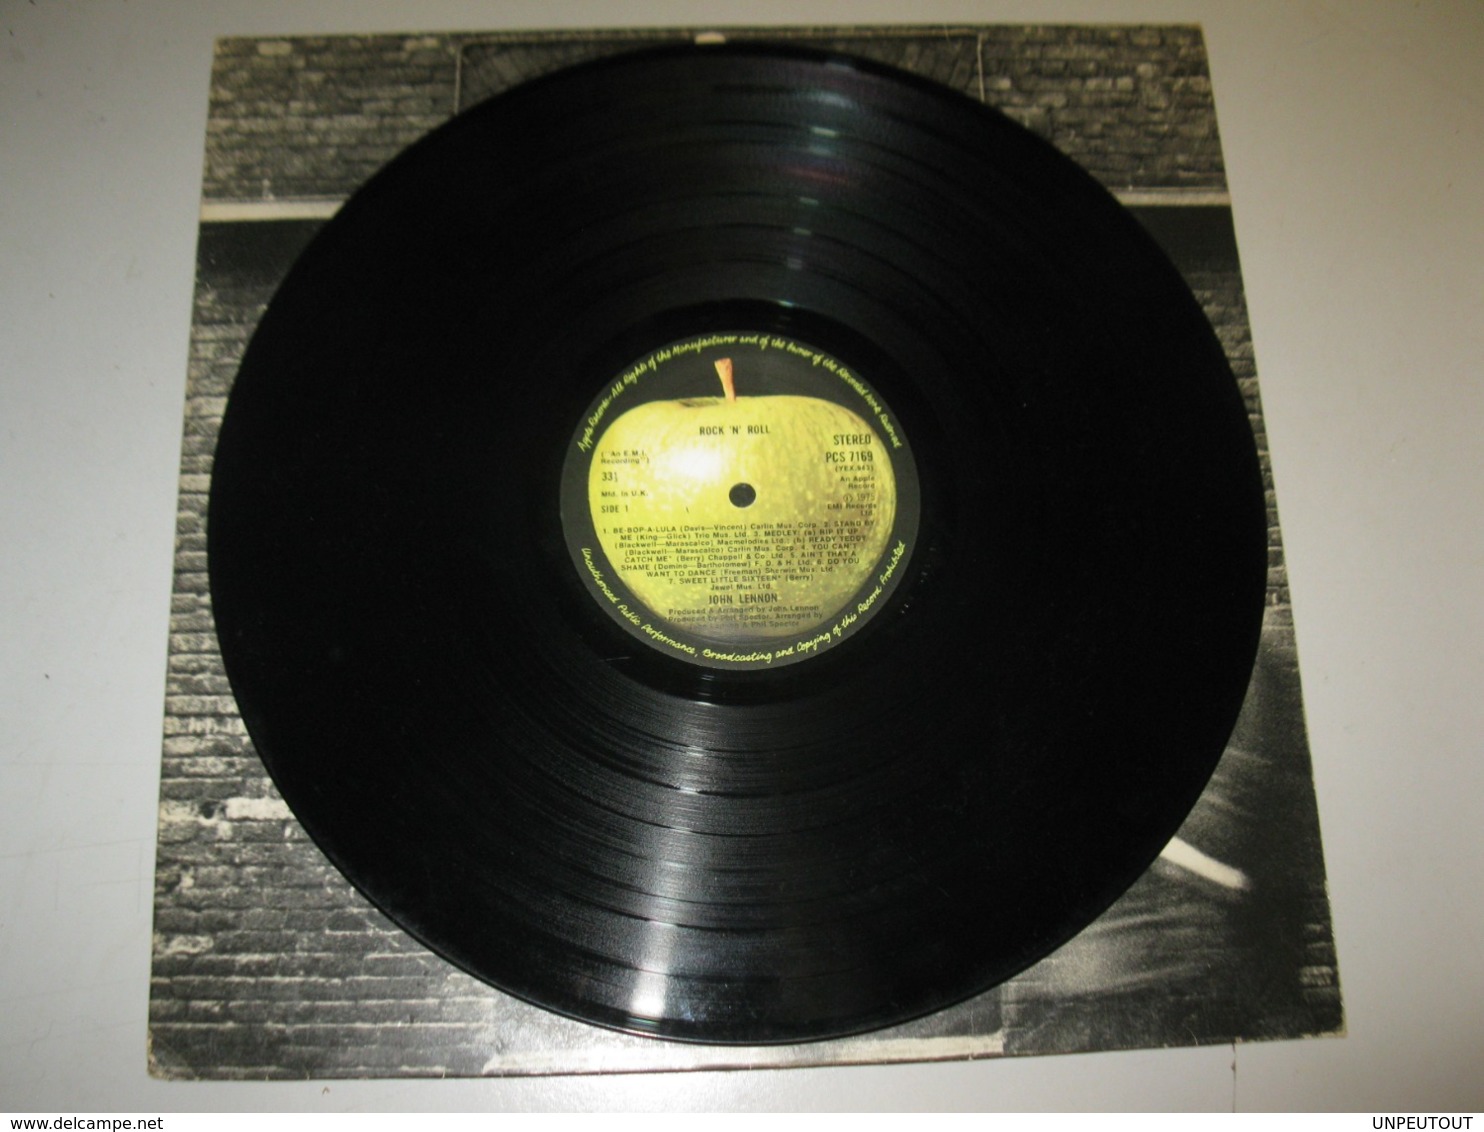 VINYLE JOHN LENNON "ROCK 'N' ROLL" 33 T APPLE / EMI (1975) - Rock